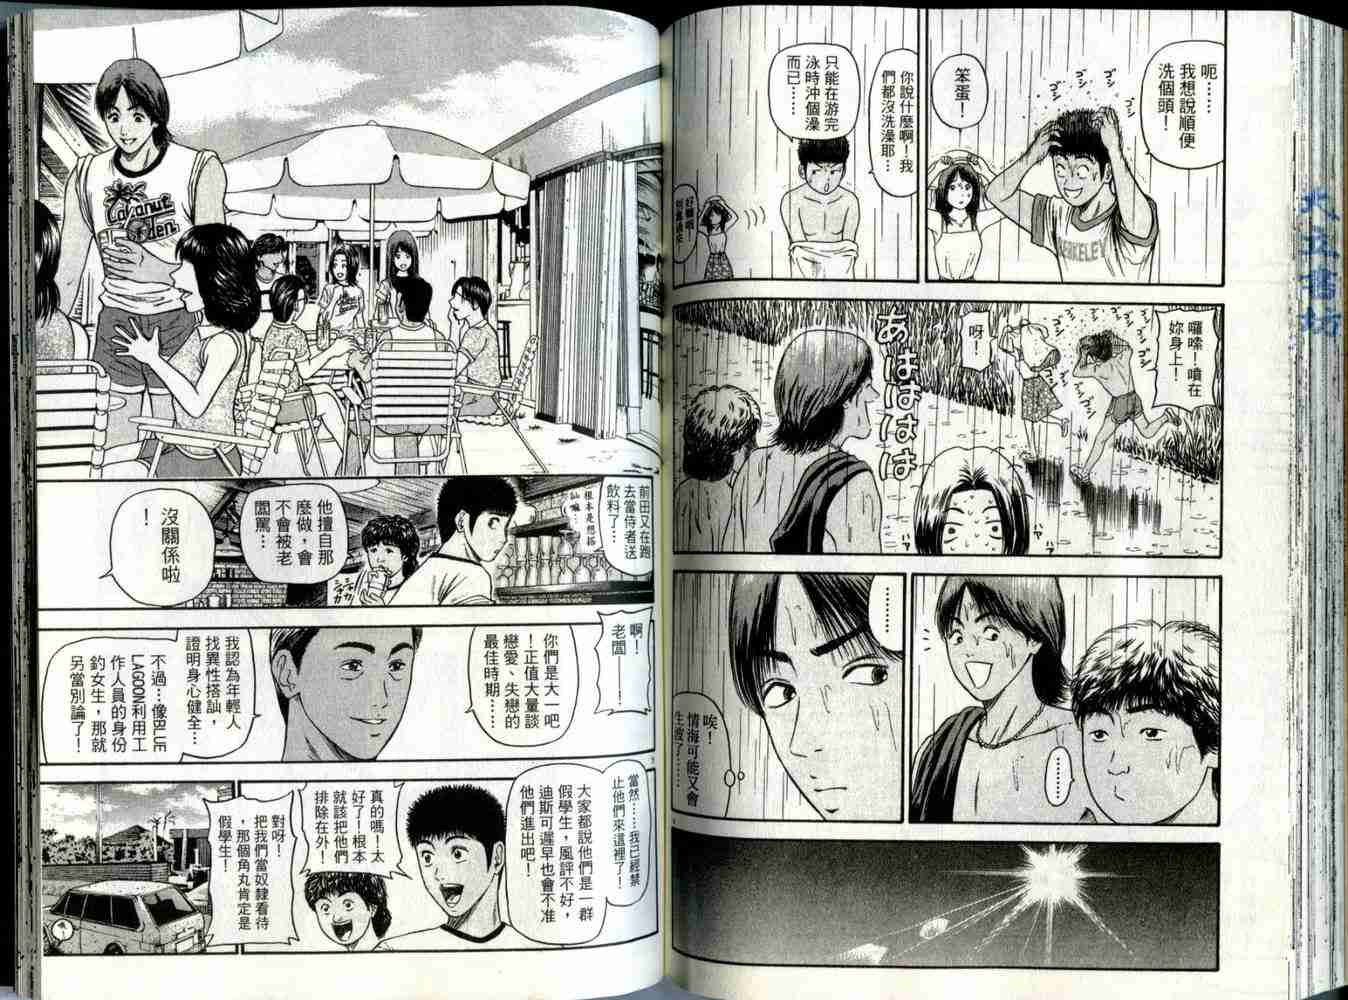 東京80年代漫畫04卷 第90頁 東京80年代04卷劇情 看漫畫